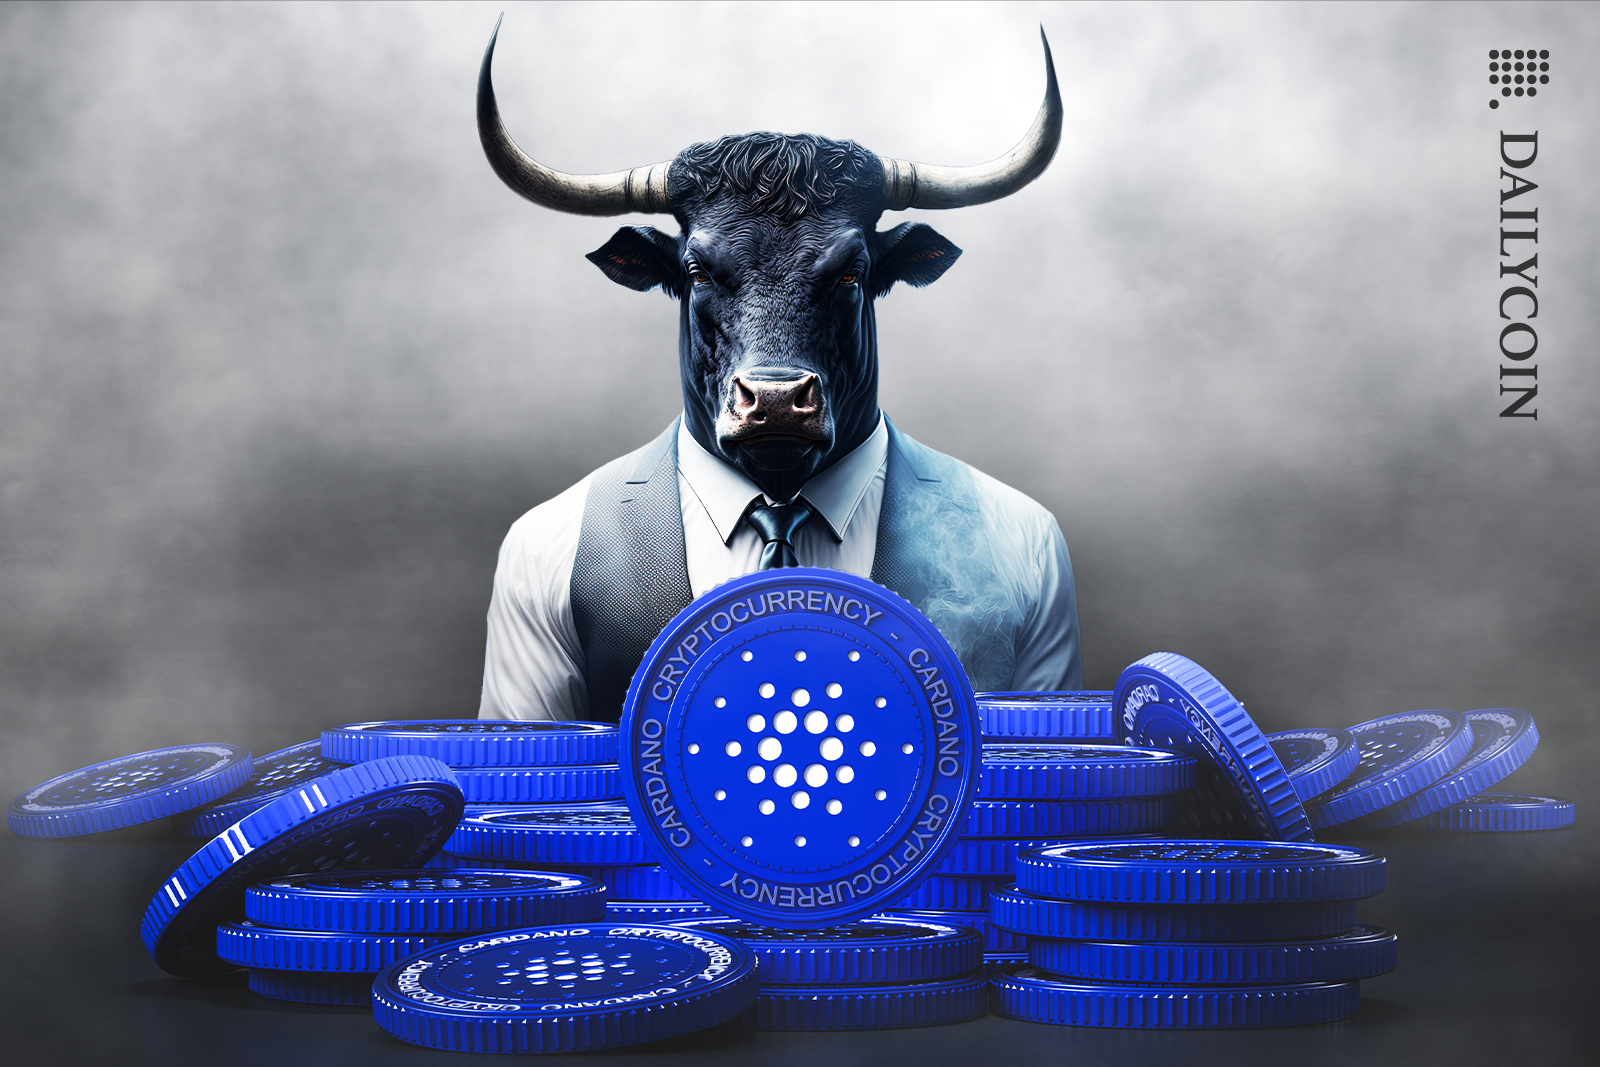 Cardano bull with many ada tokens.